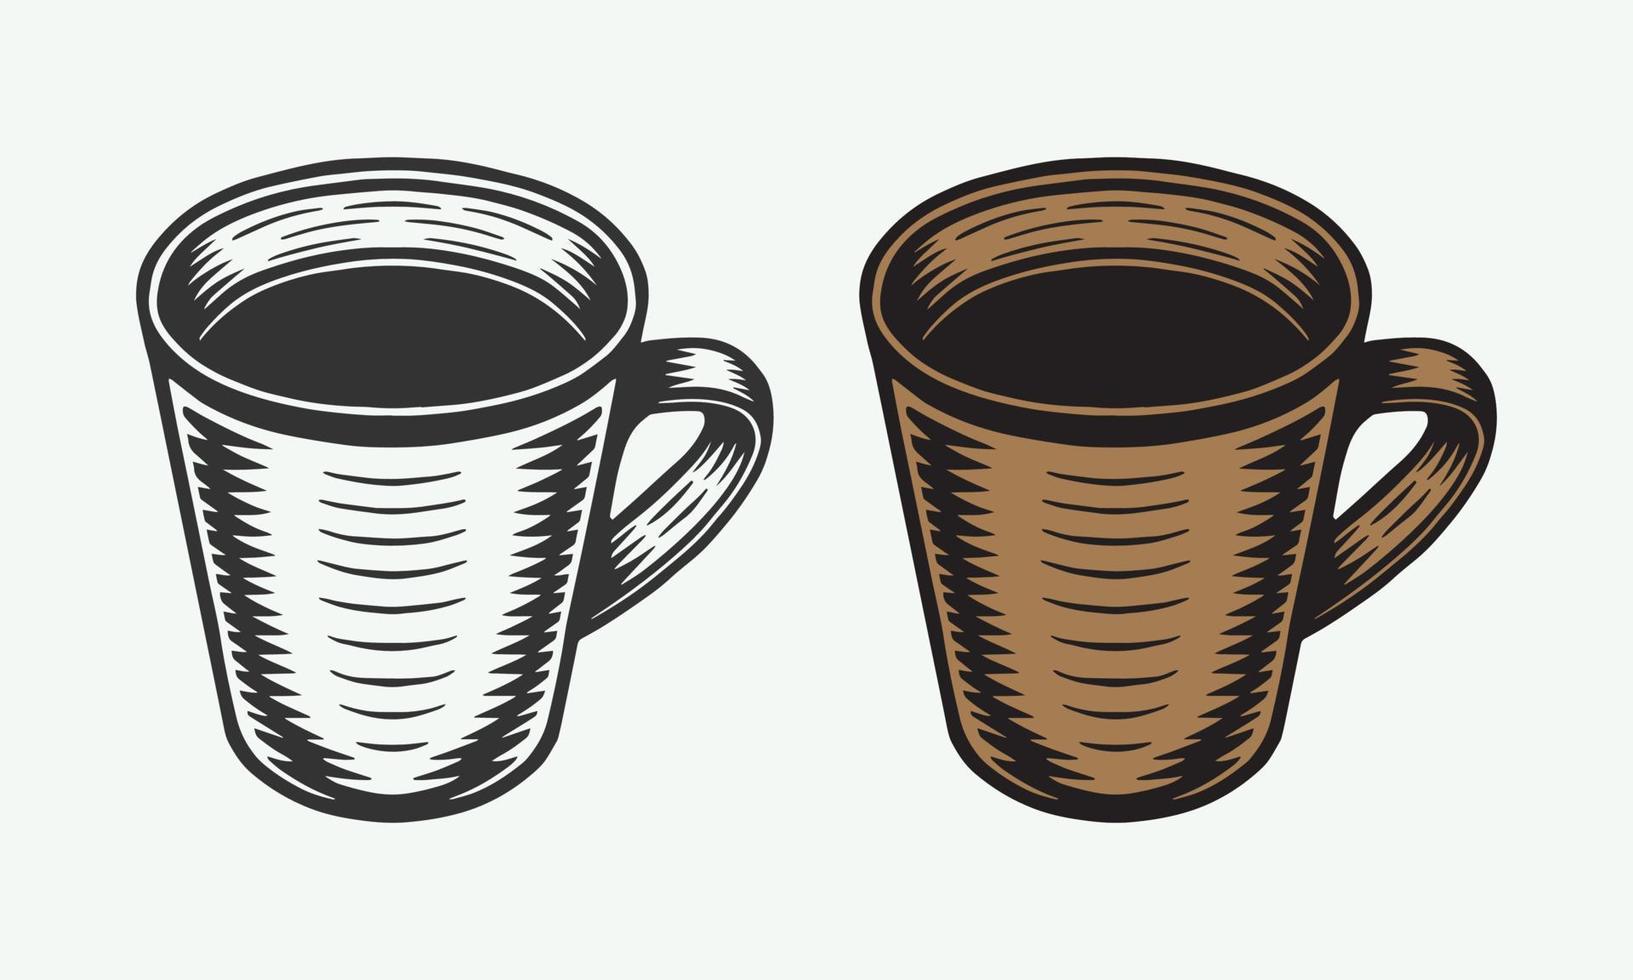 årgång retro kaffe eller te kopp. kan vara Begagnade för märka, bricka, emblem och logotyp. vektor illustration. svartvit grafisk.